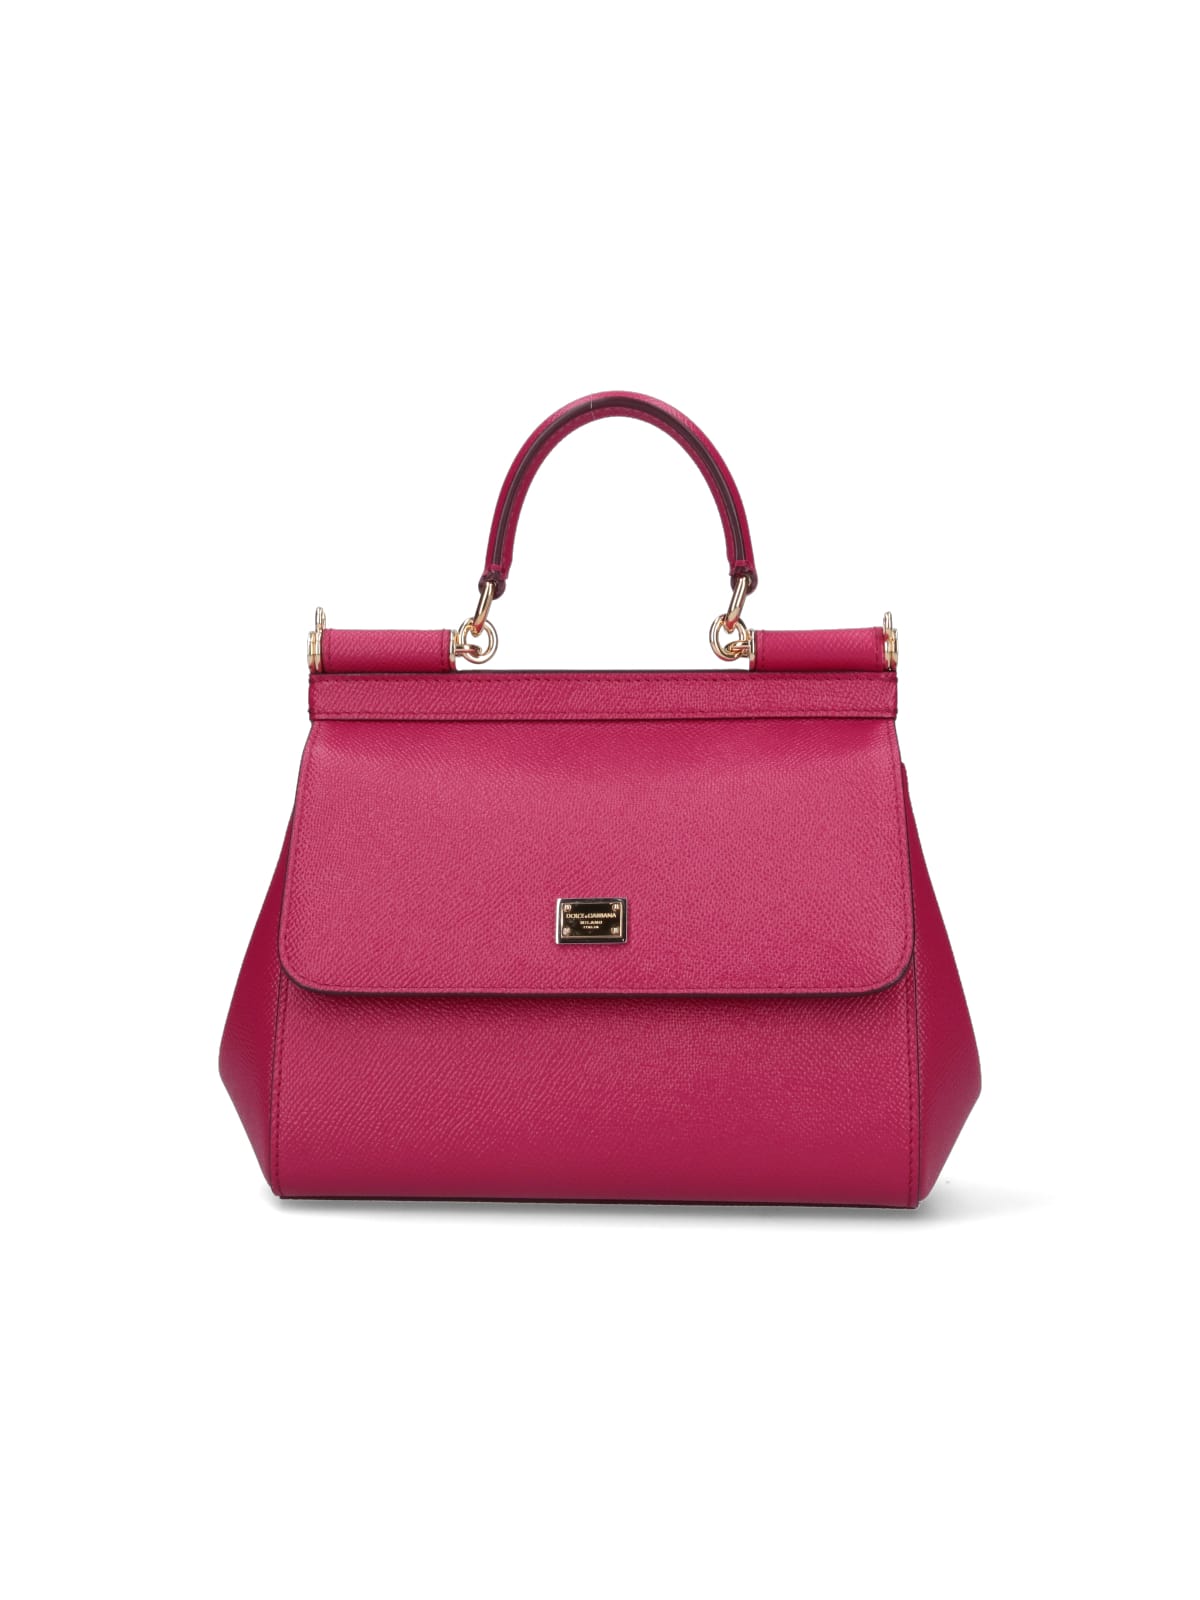 Dolce & Gabbana Medium Handbag Sicily In Pink